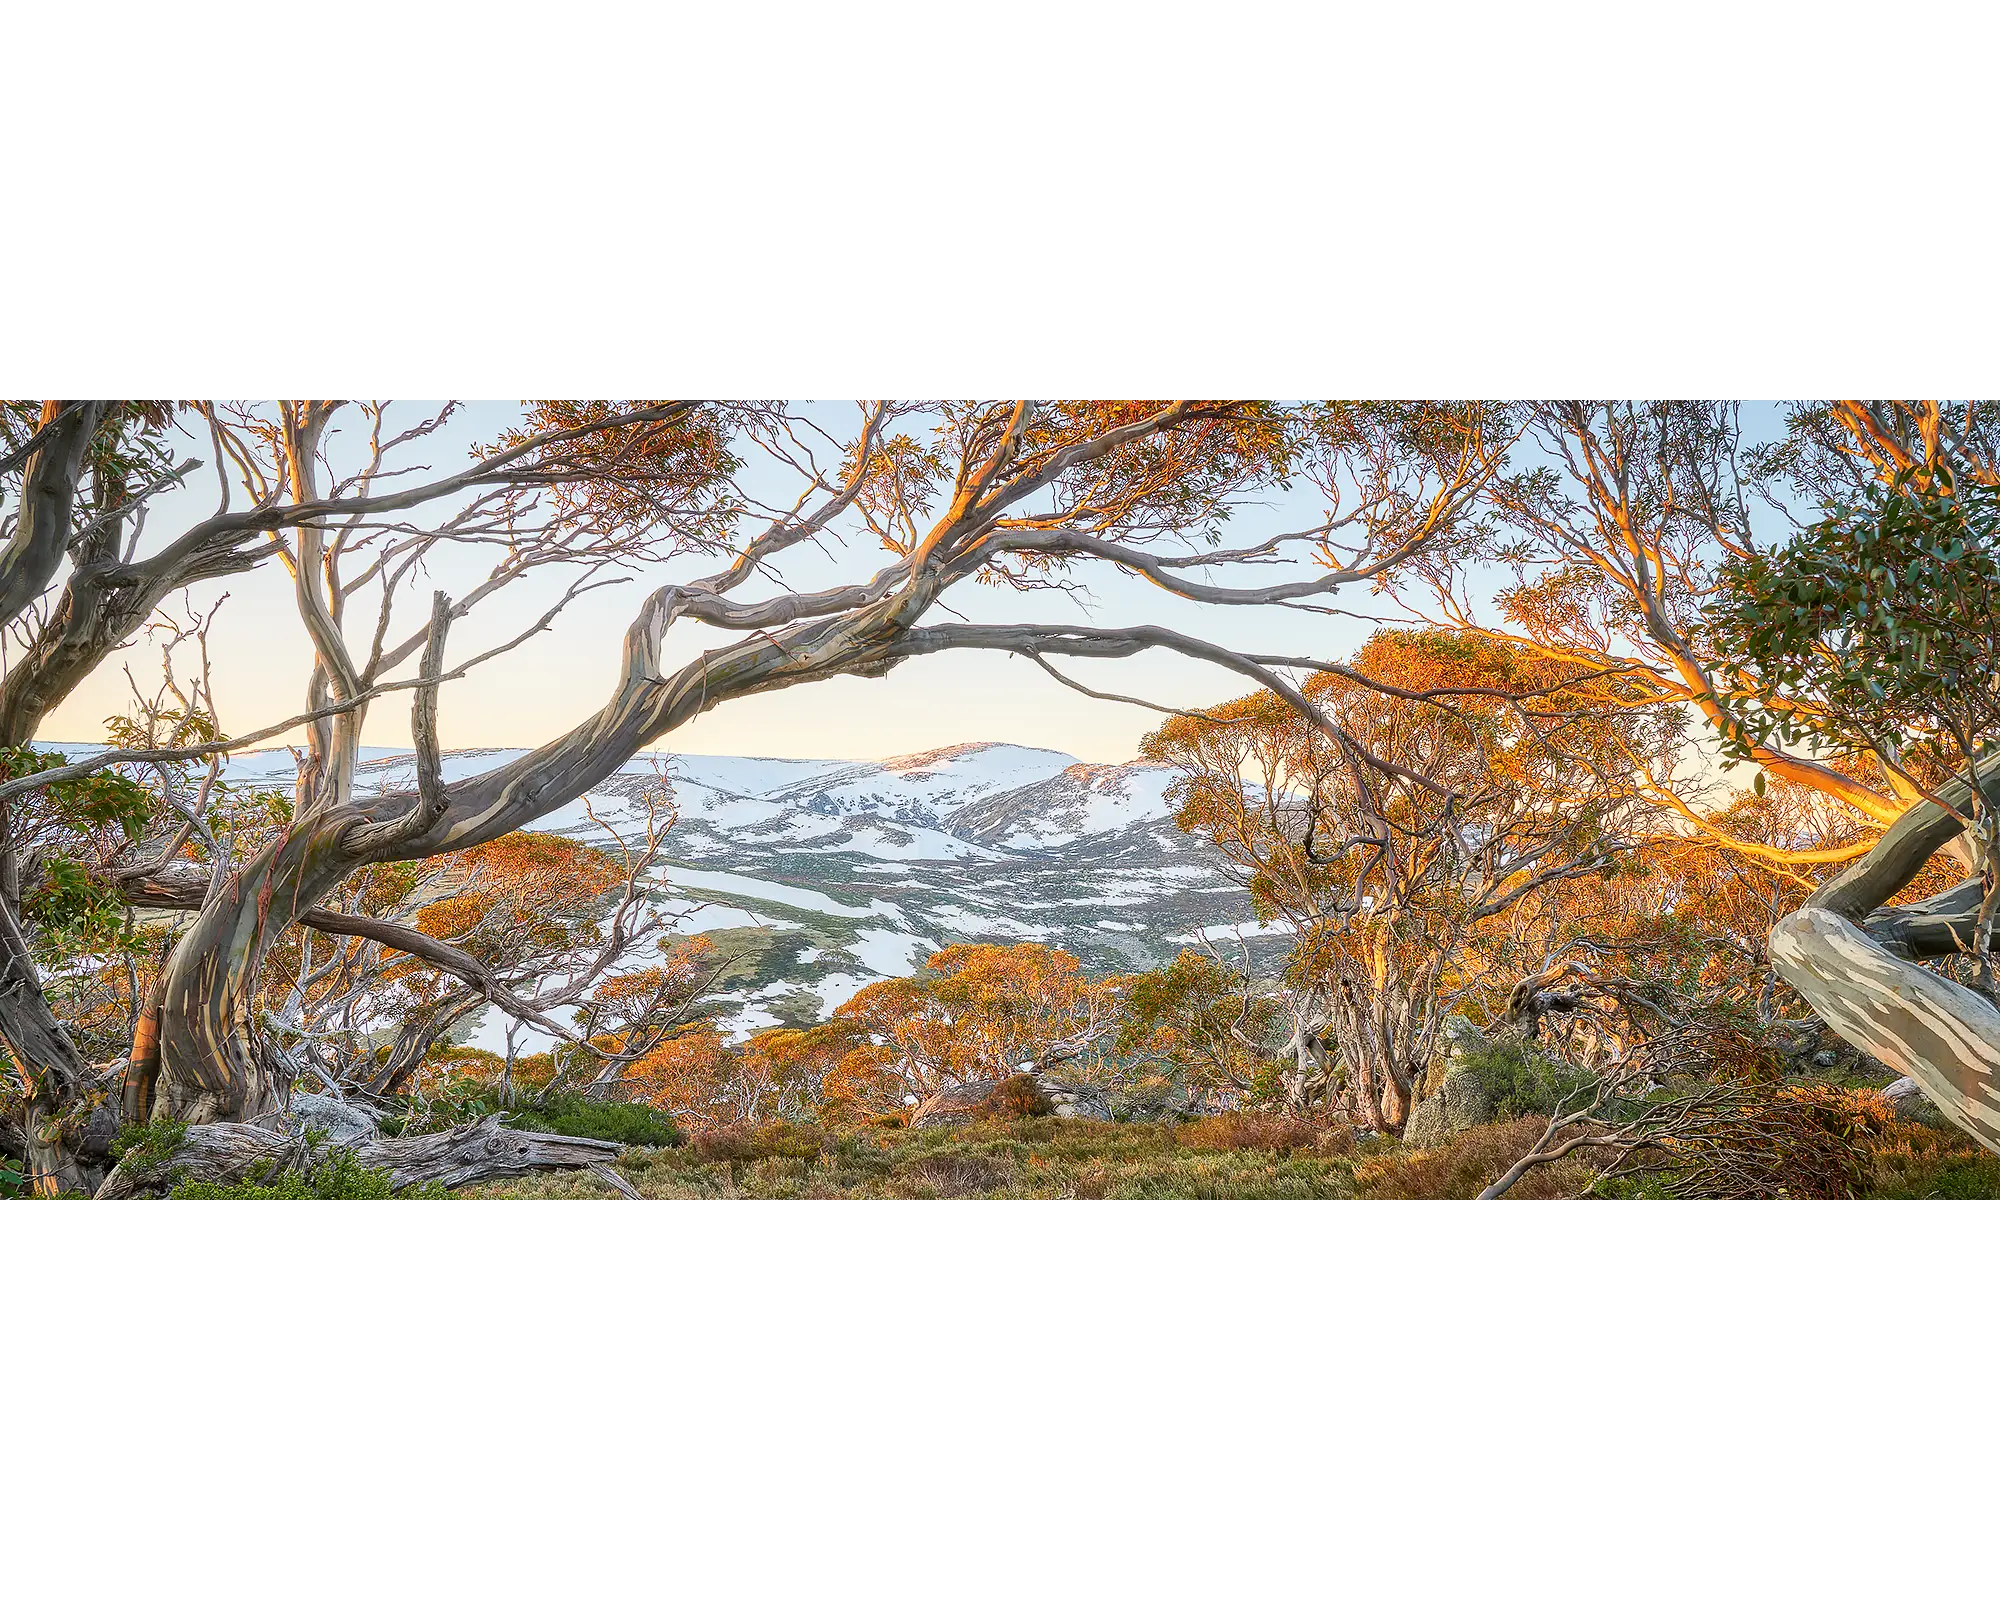 Twynams View - Snow on Mount Twynam, Kosciuszko National Park, New South Wales, Australia.